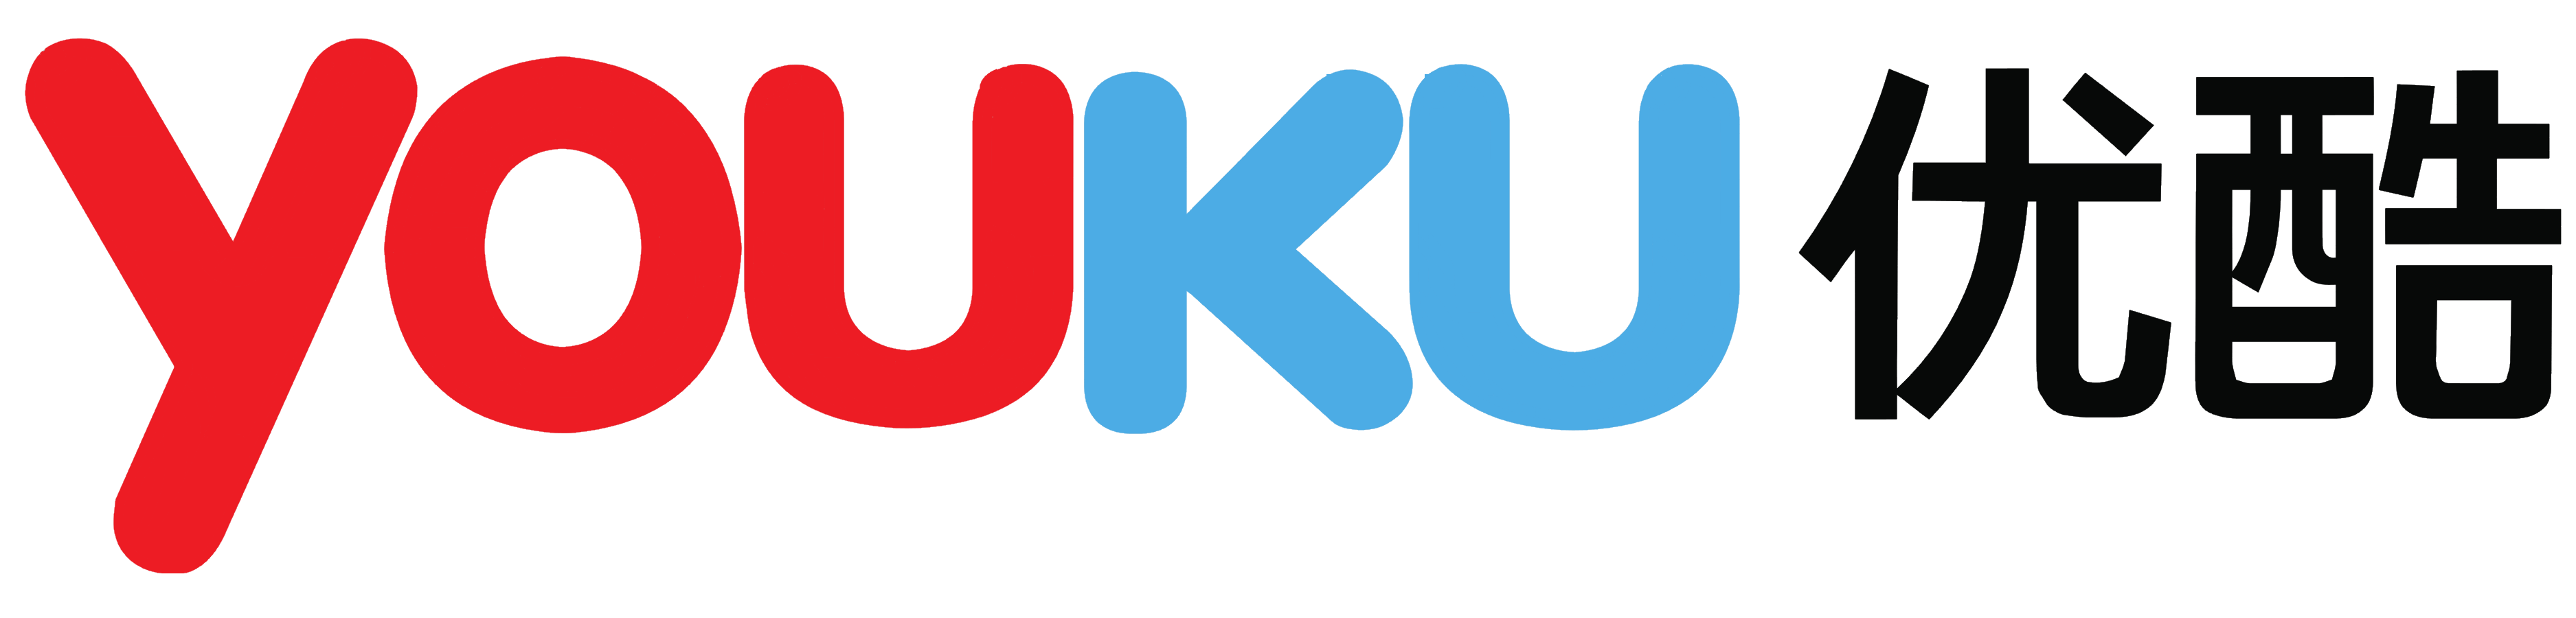 Youku Logo PNG - 106629